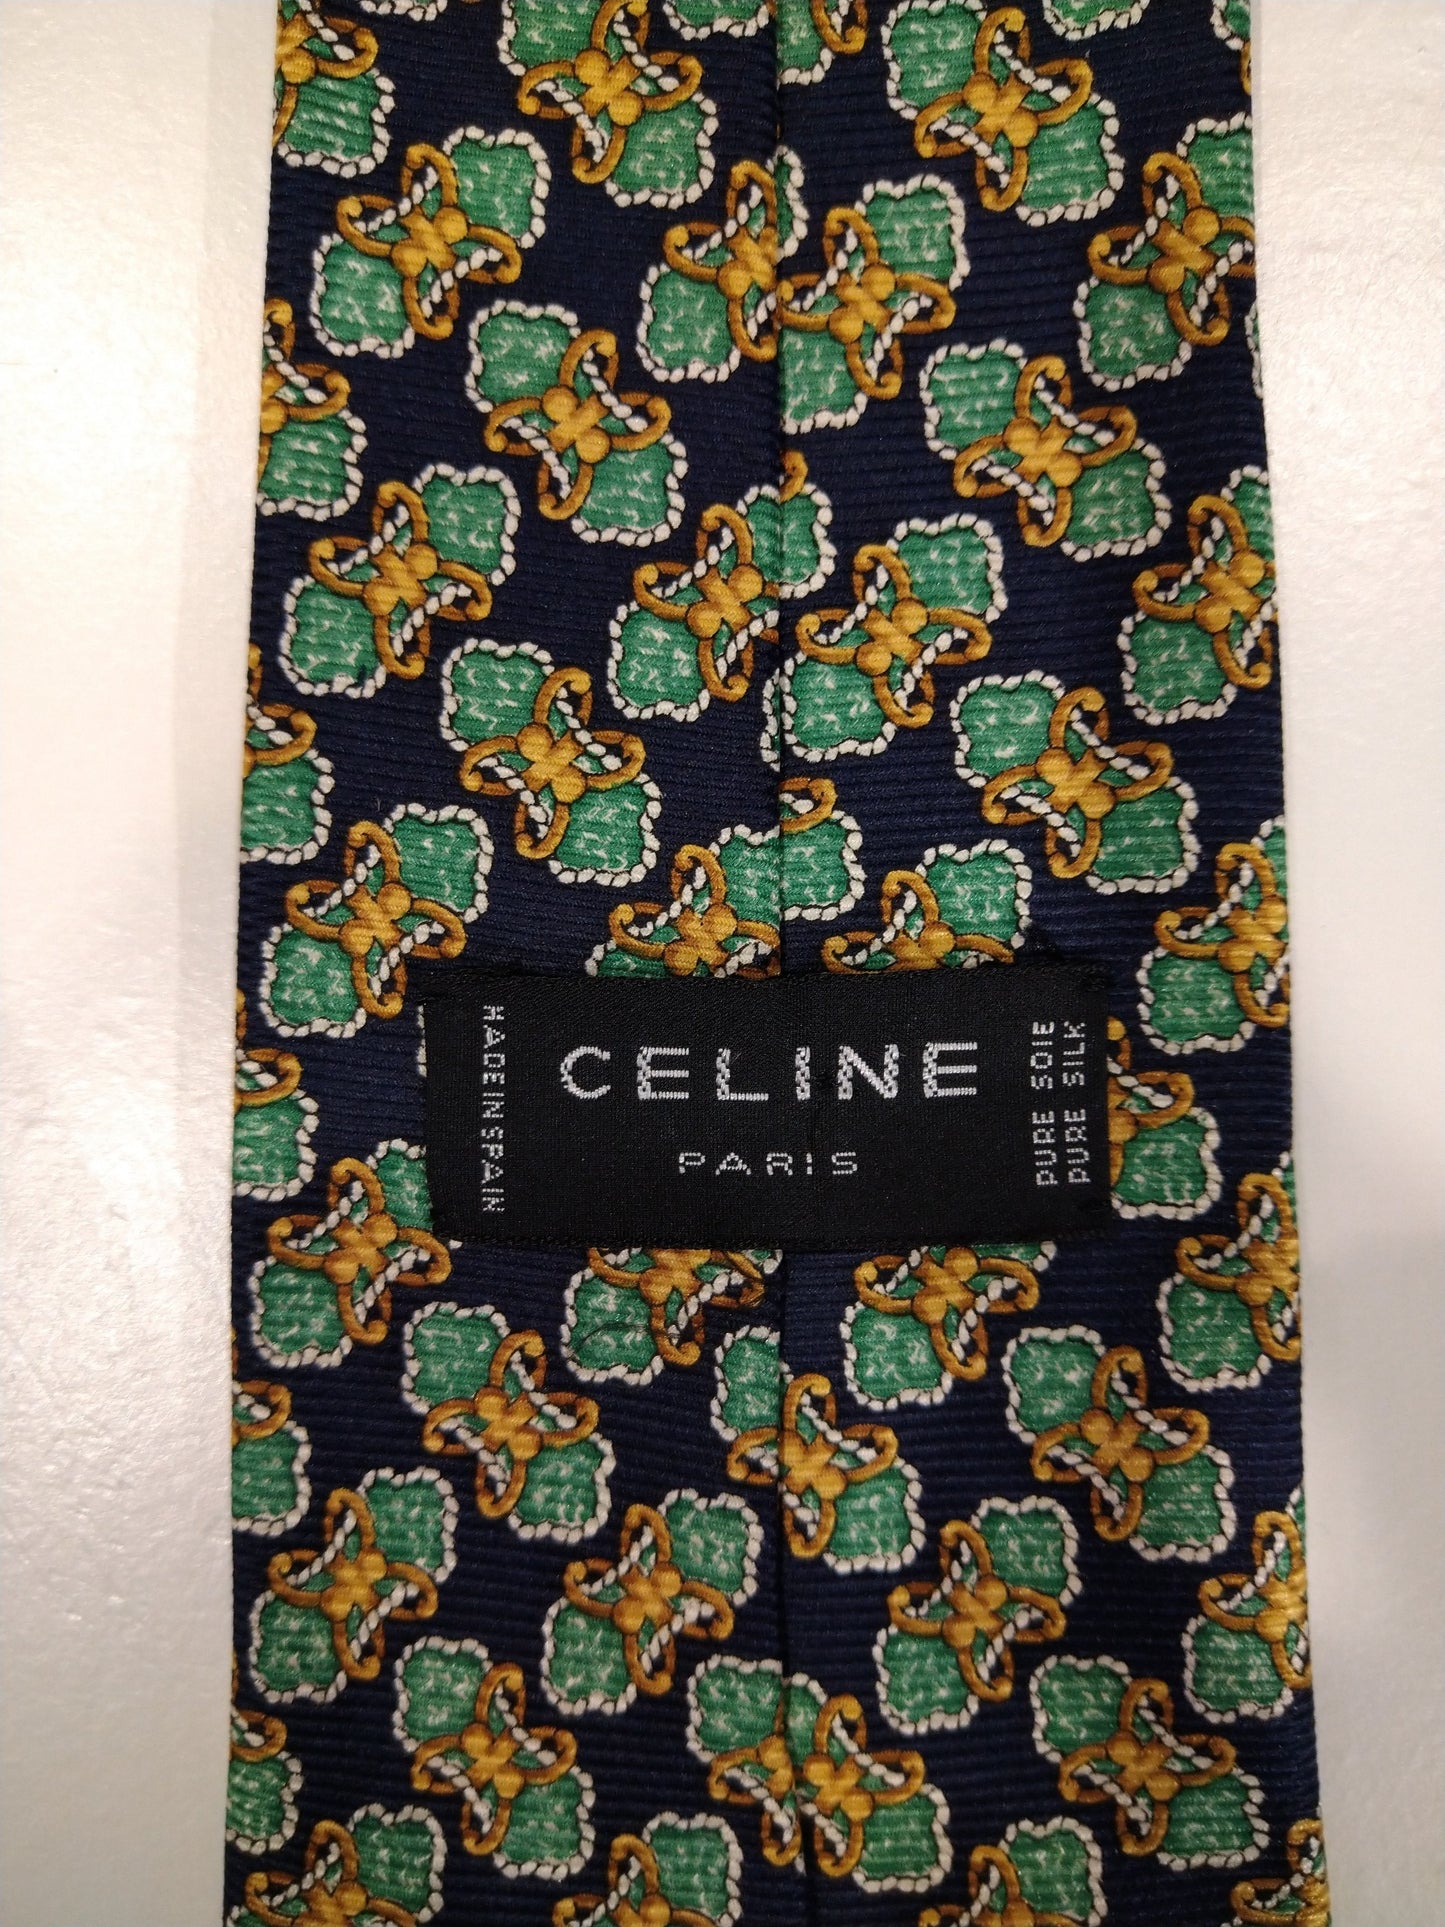 Cravatta di seta Celine Paris. Motivo giallo blu verde.